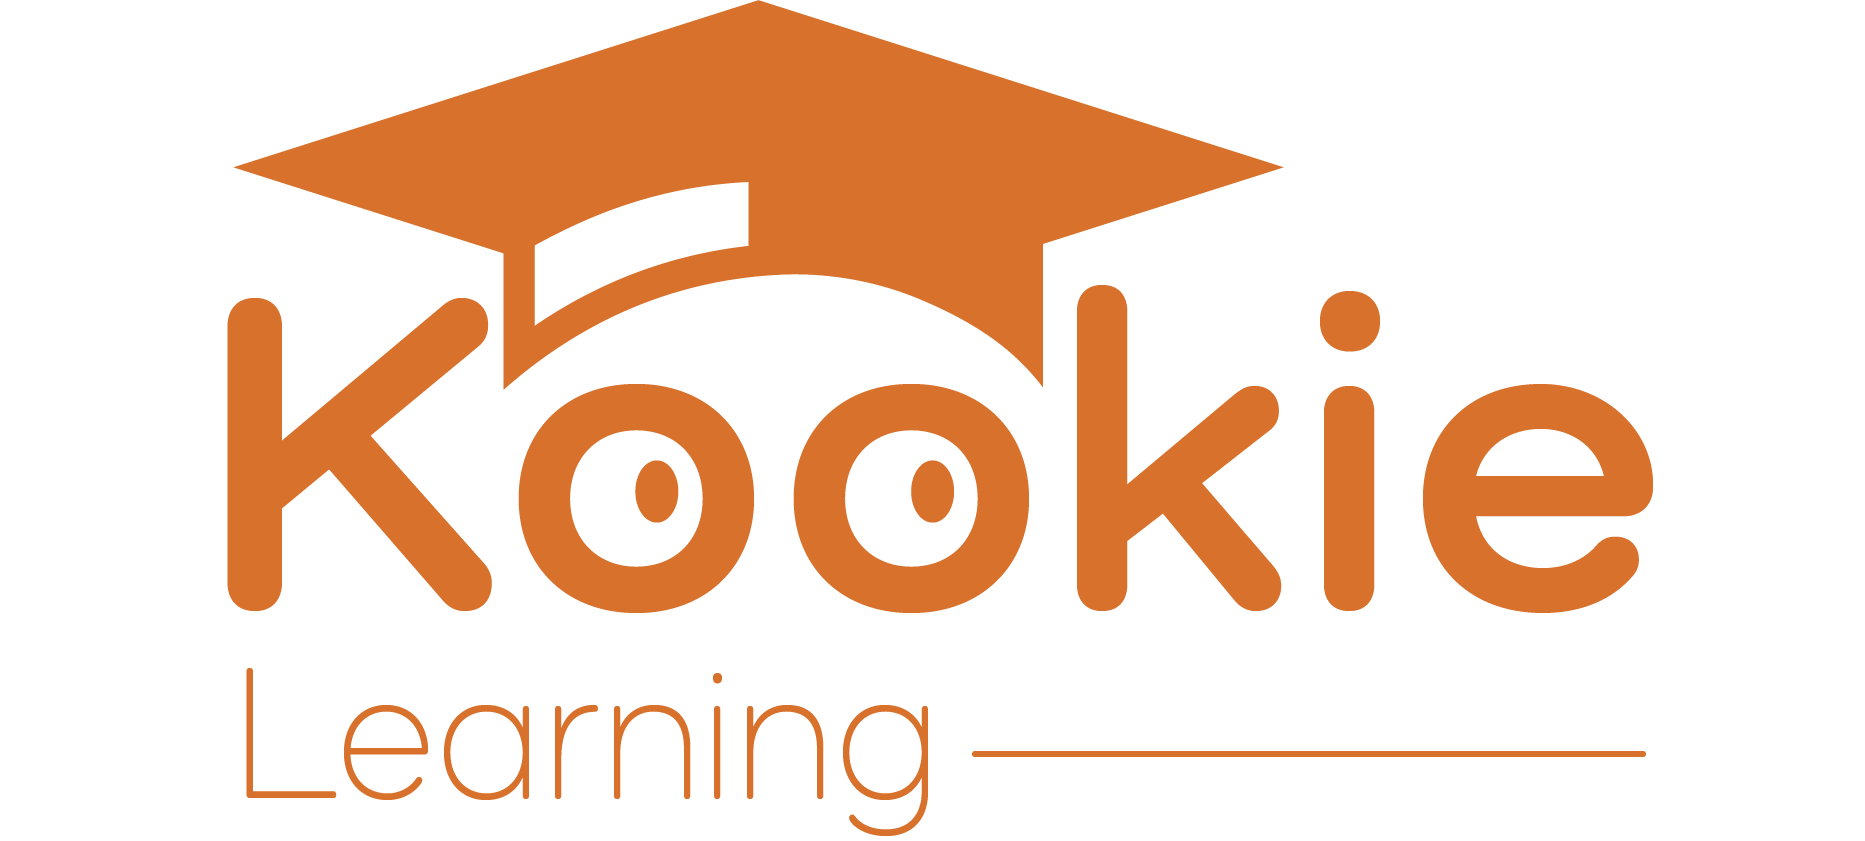 Kookie Learning